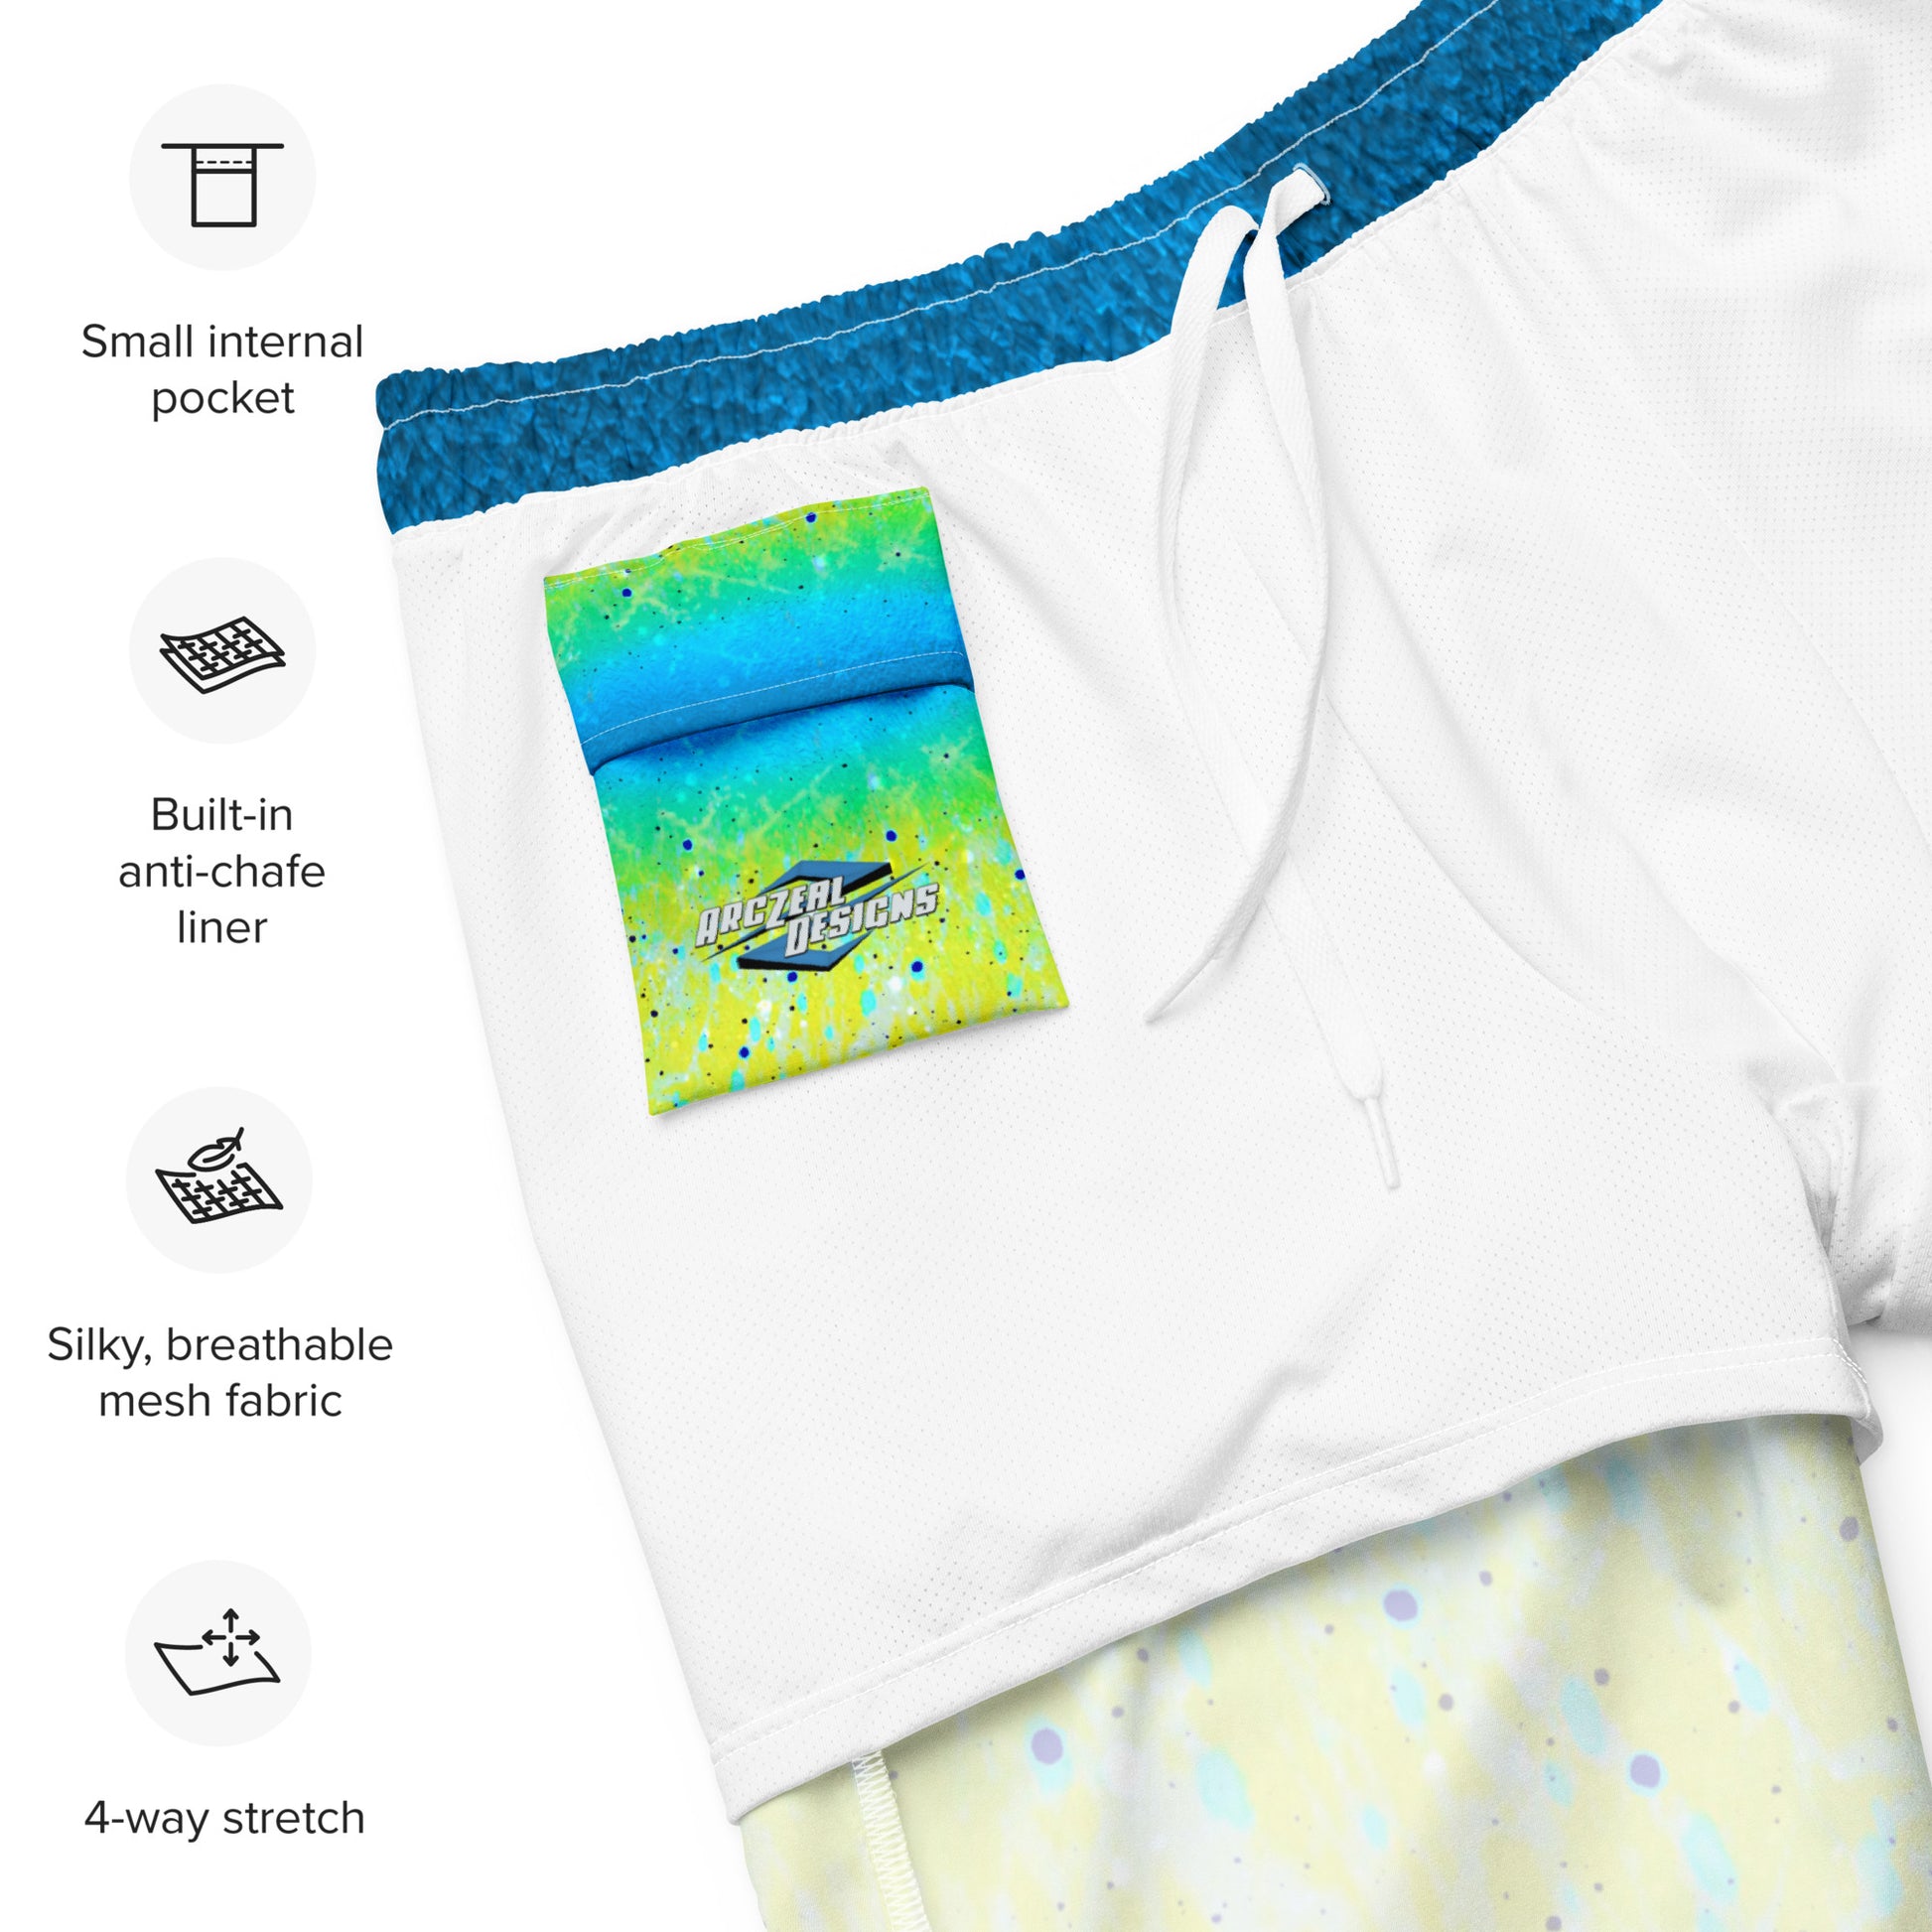  Men's Swim Trunks | Mahi Mahi Print ArcZeal Designs